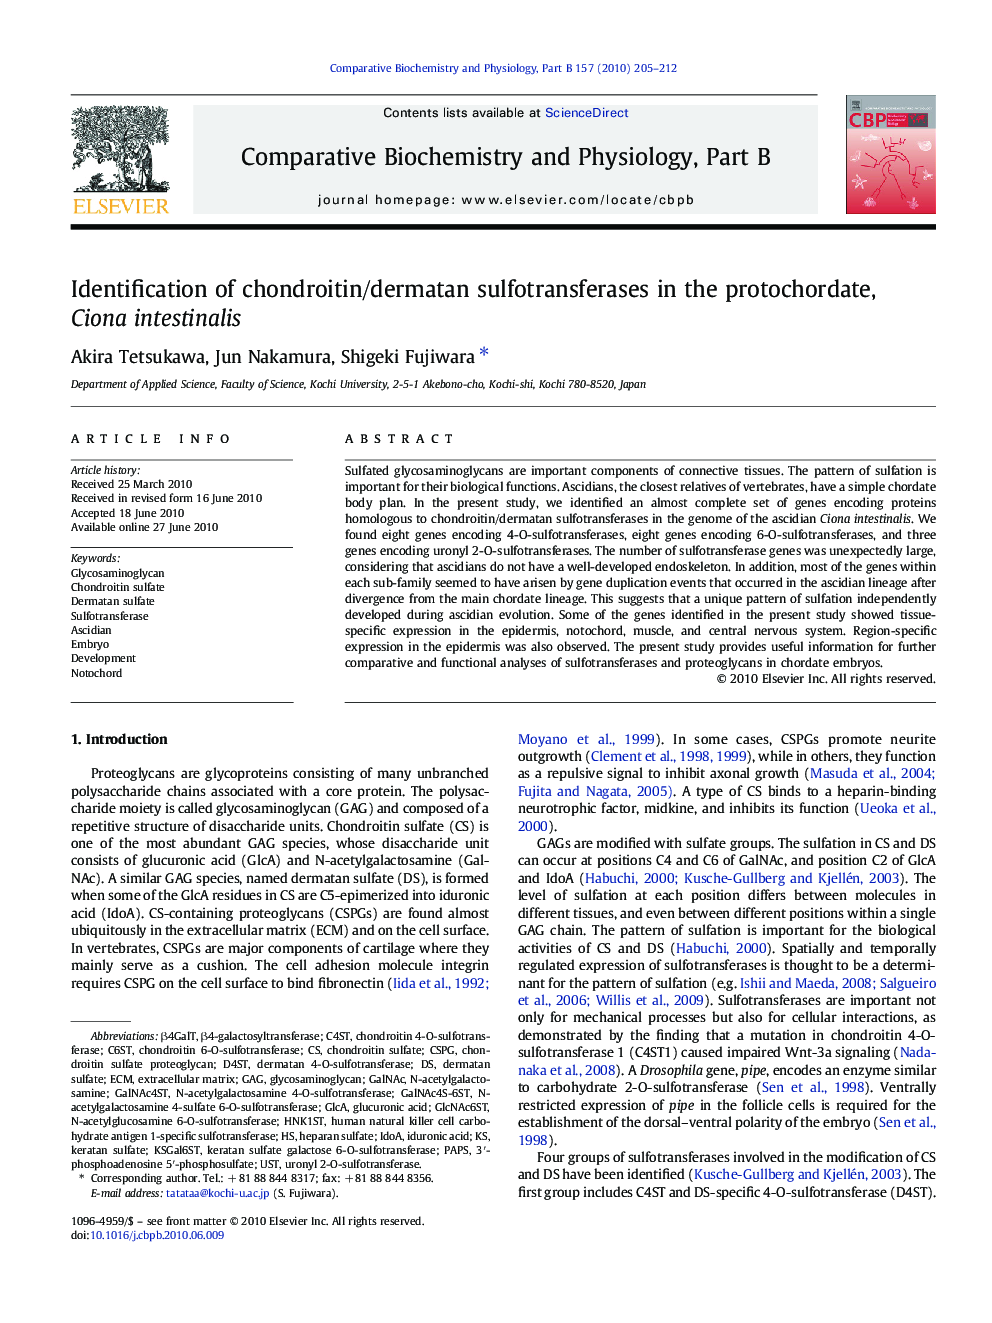 Identification of chondroitin/dermatan sulfotransferases in the protochordate, Ciona intestinalis